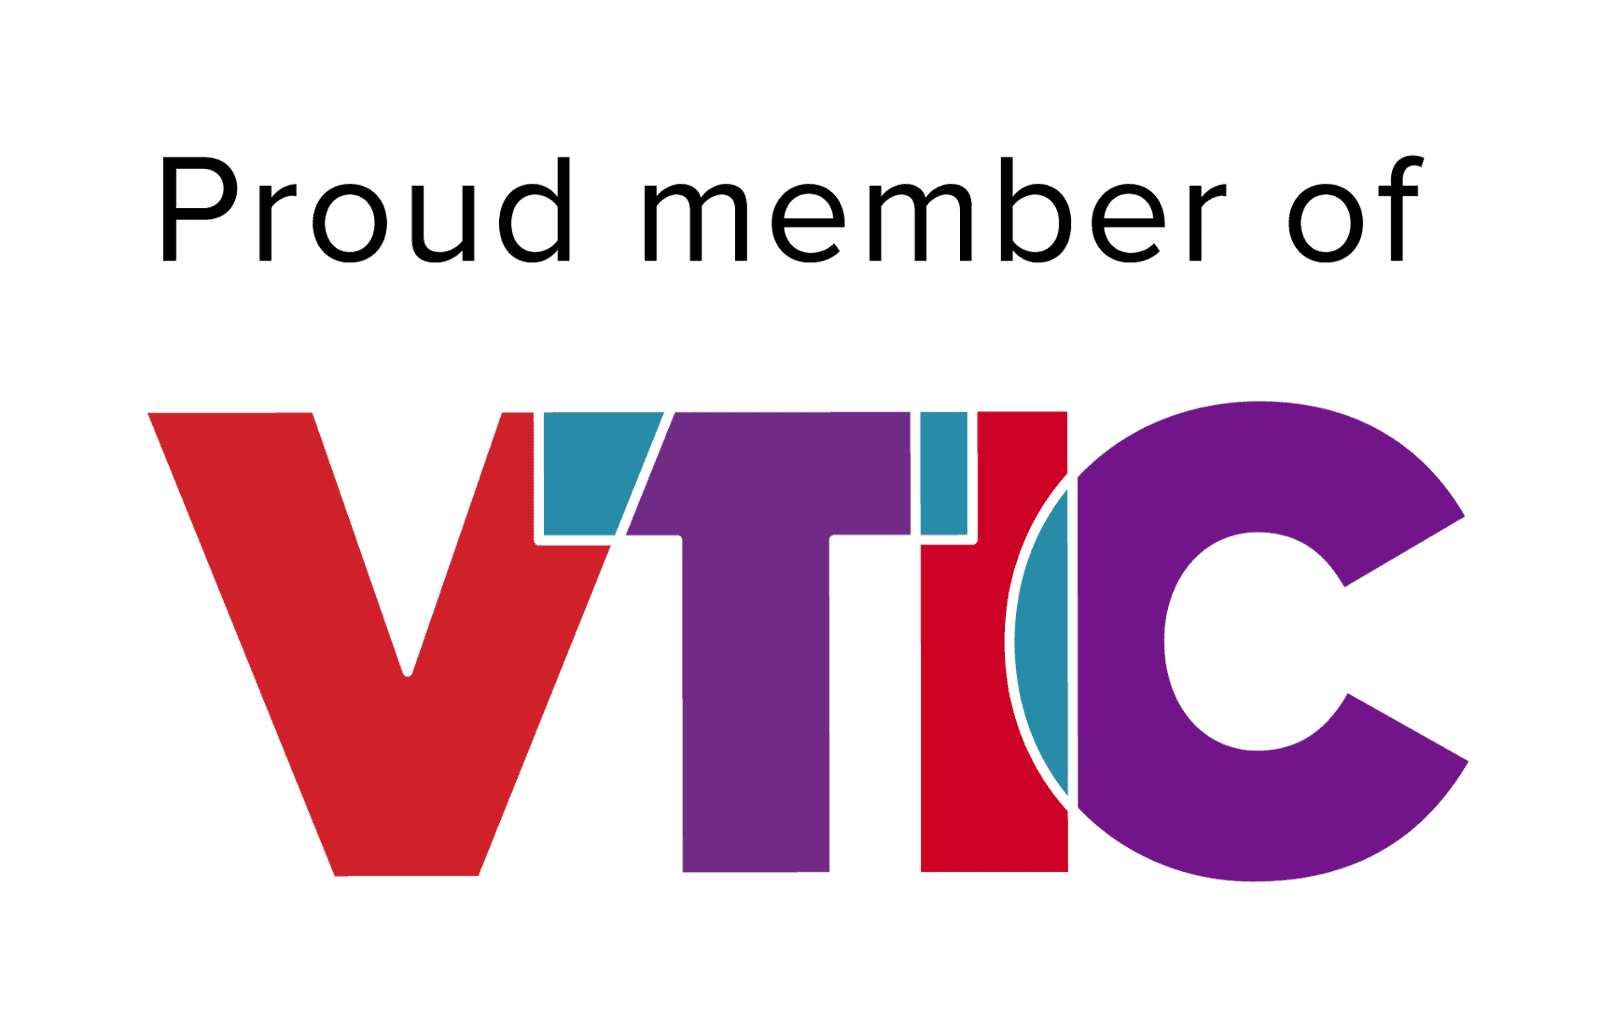 Tour de Vines is a member of the Victorian Tourism Industry Council